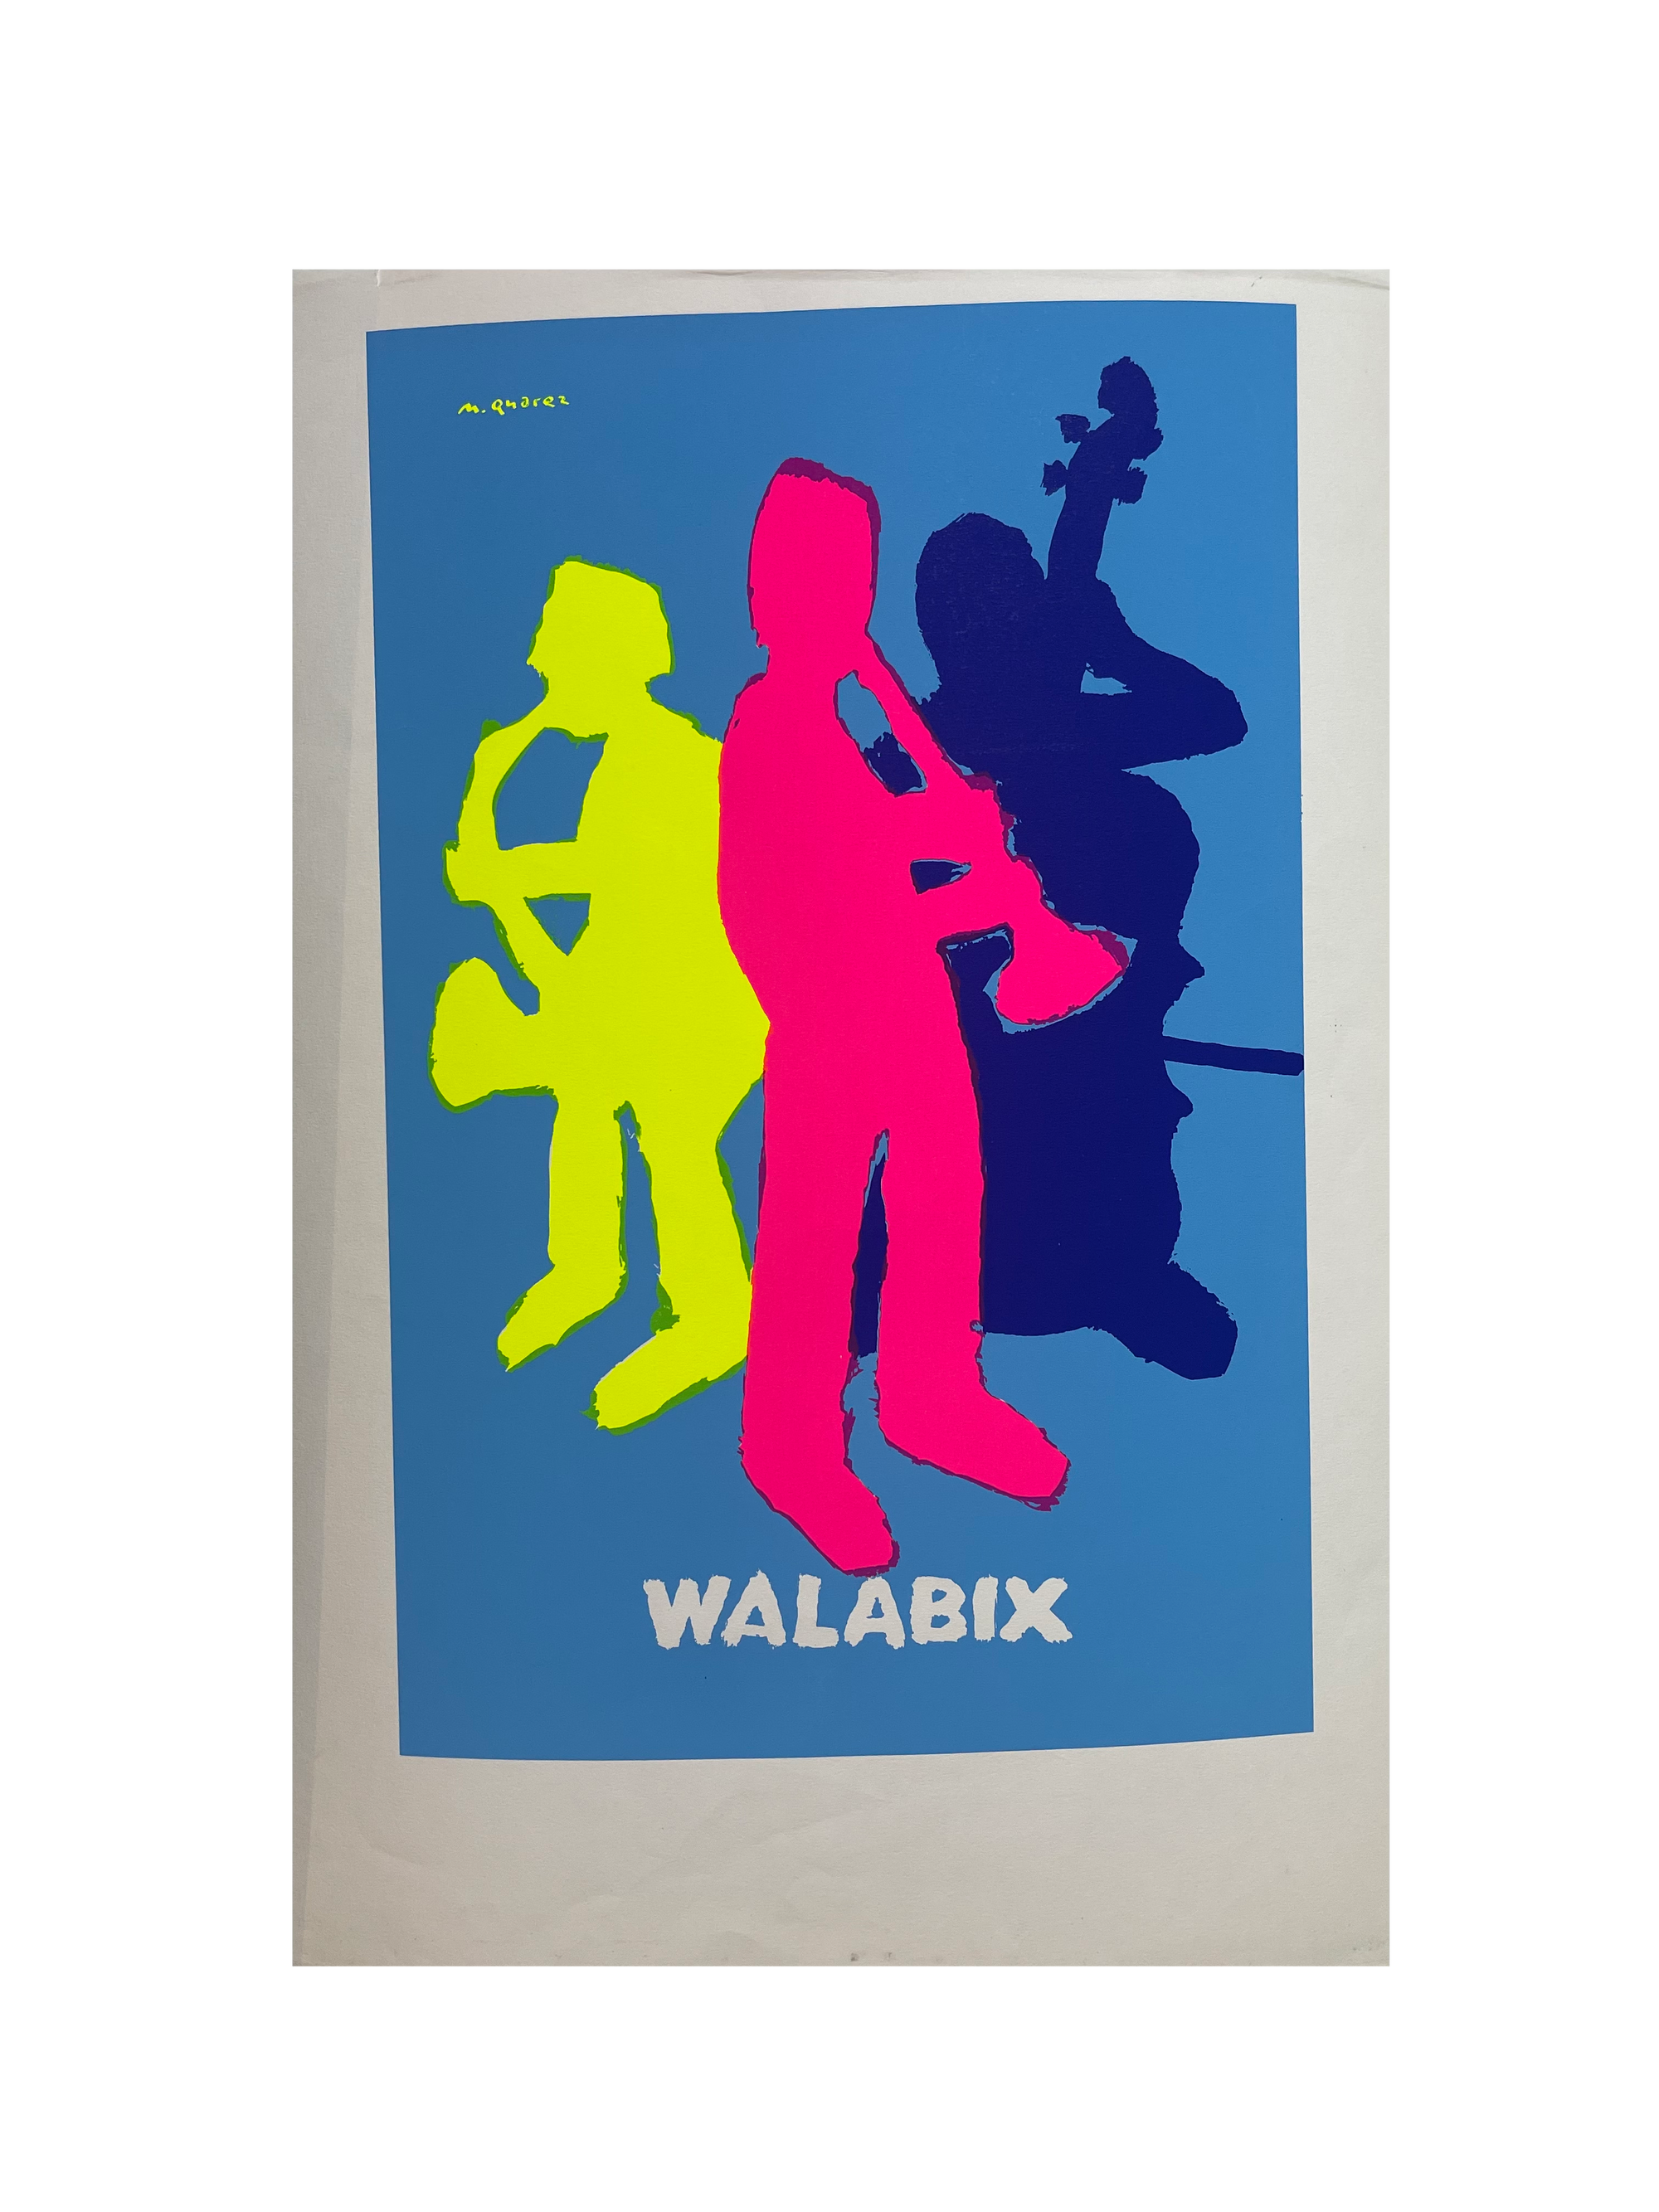 Walabix by Quarez